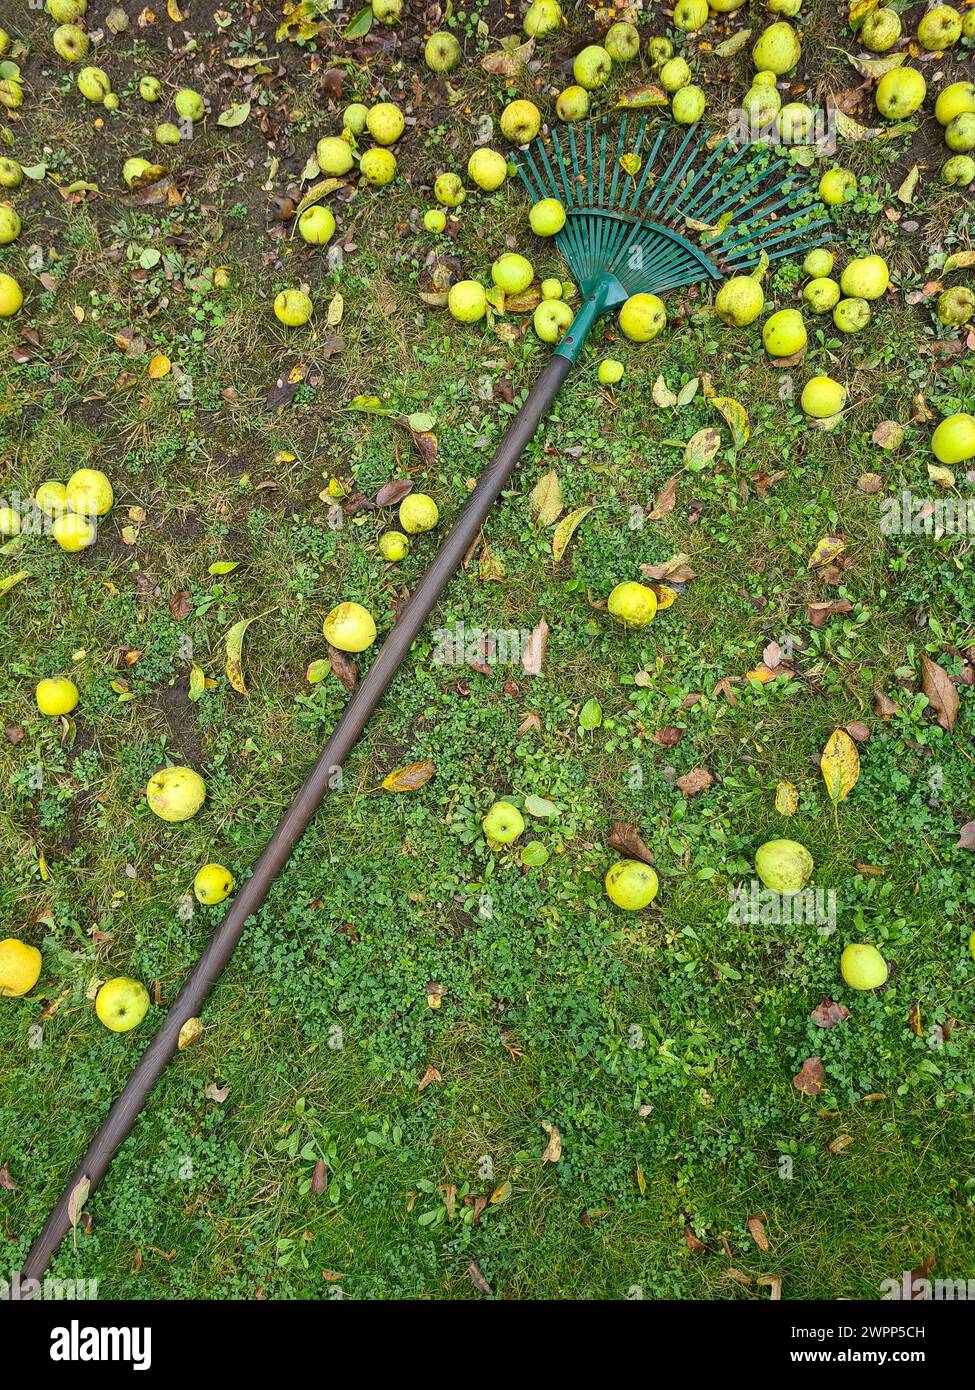 Un rastrello verde giace sul prato con mele giallo-verdi, raccolta delle mele, tempo di raccolta, giardinaggio Foto Stock